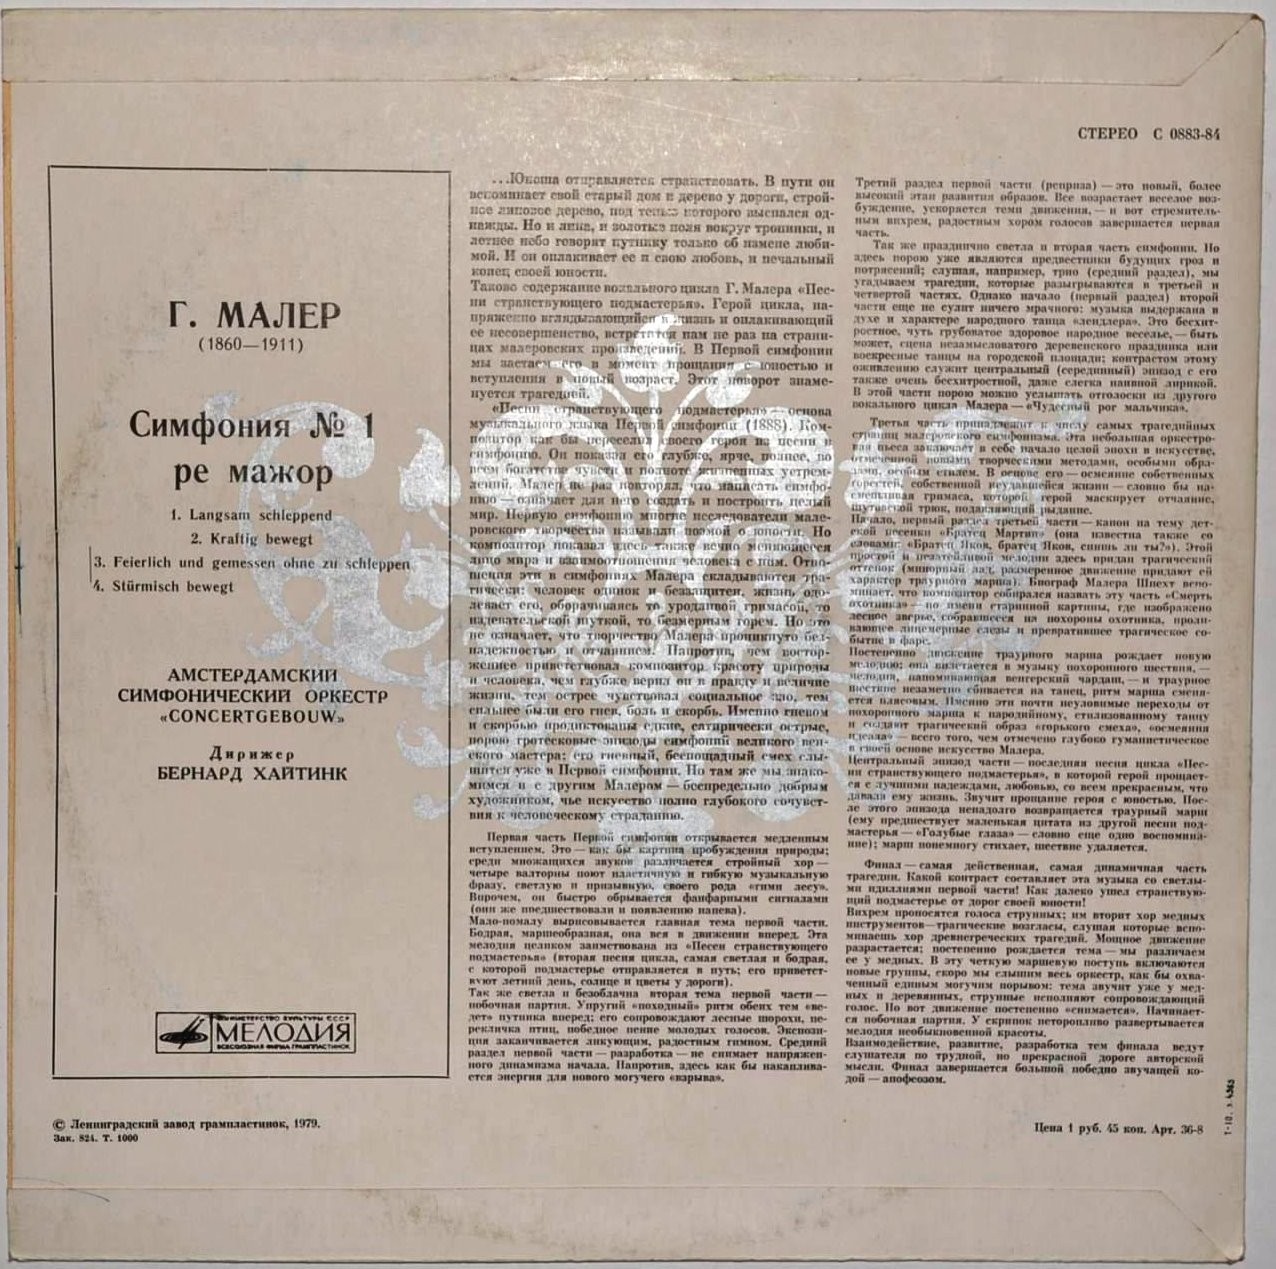 Г. МАЛЕР (1860-1911) Симфония №1 ре мажор (Б. Хайтинк)